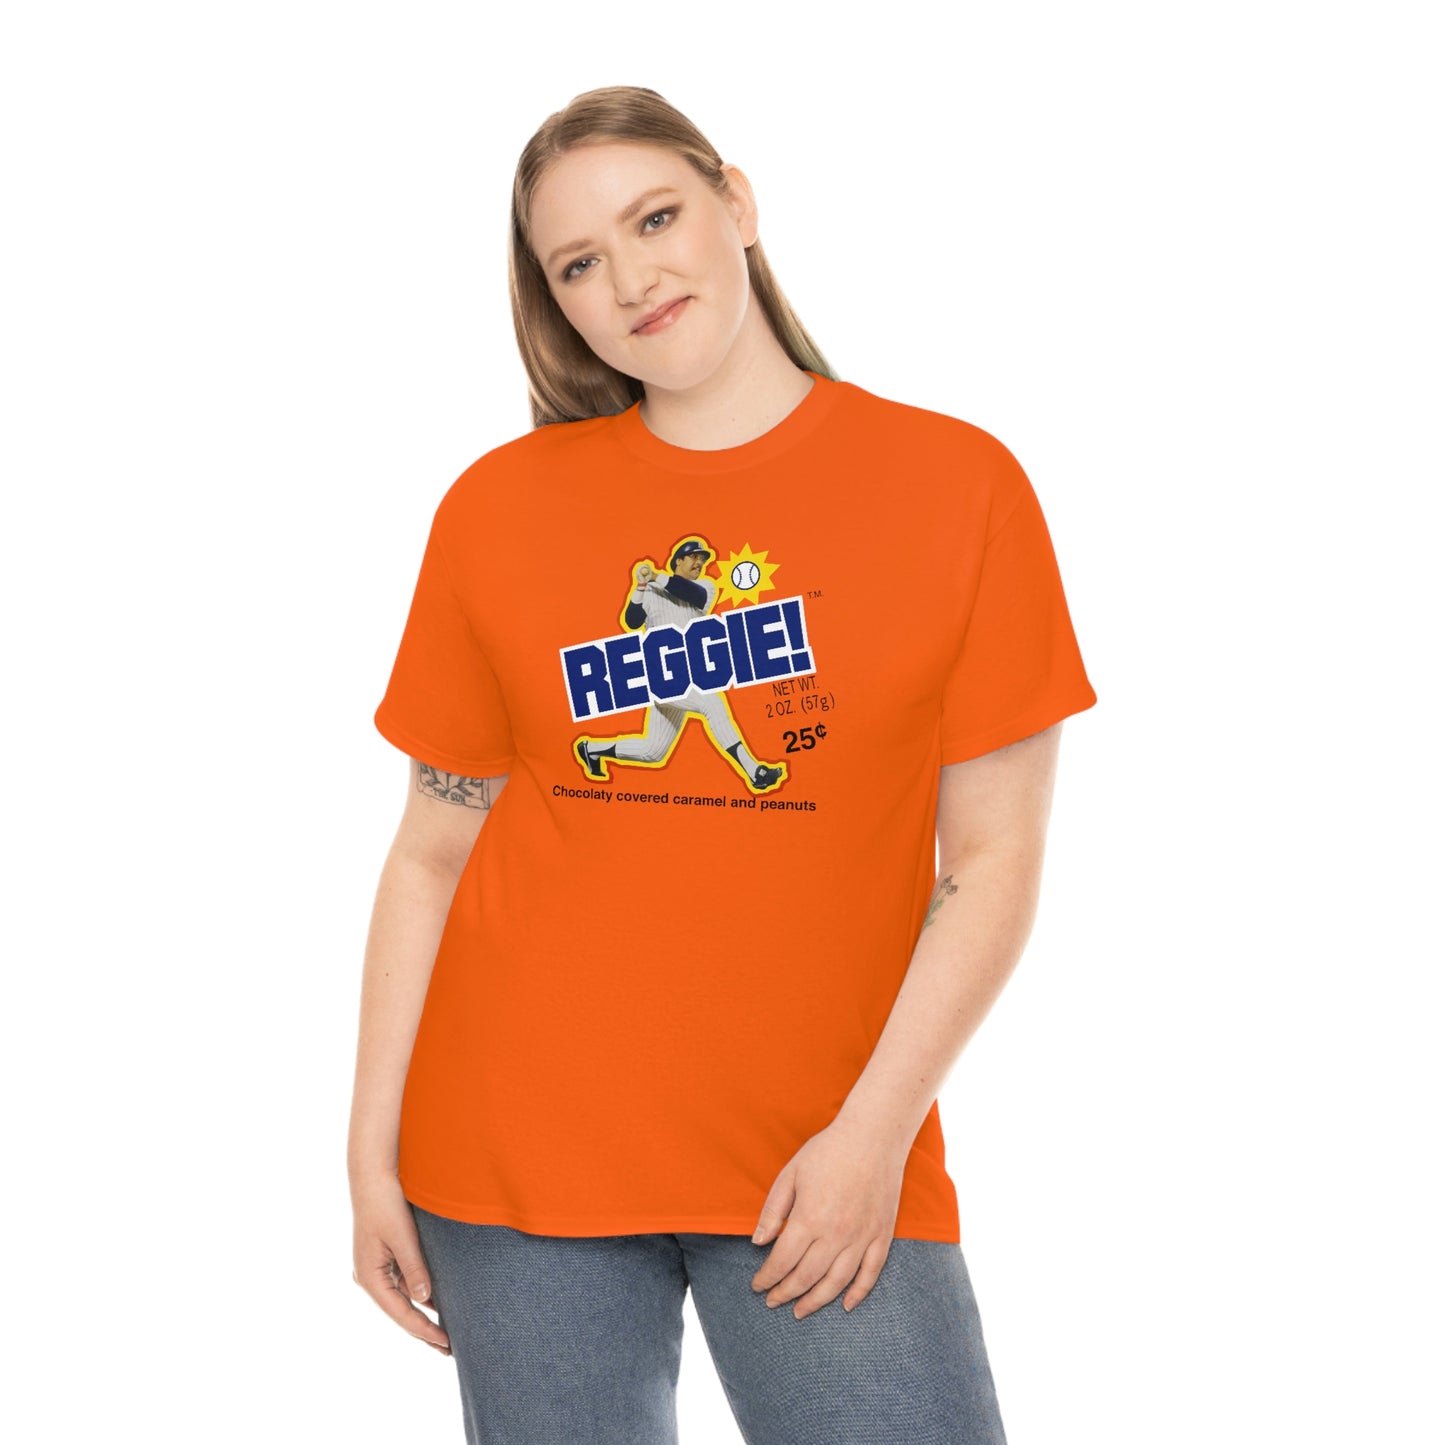 Reggie Candy Bar T-Shirt